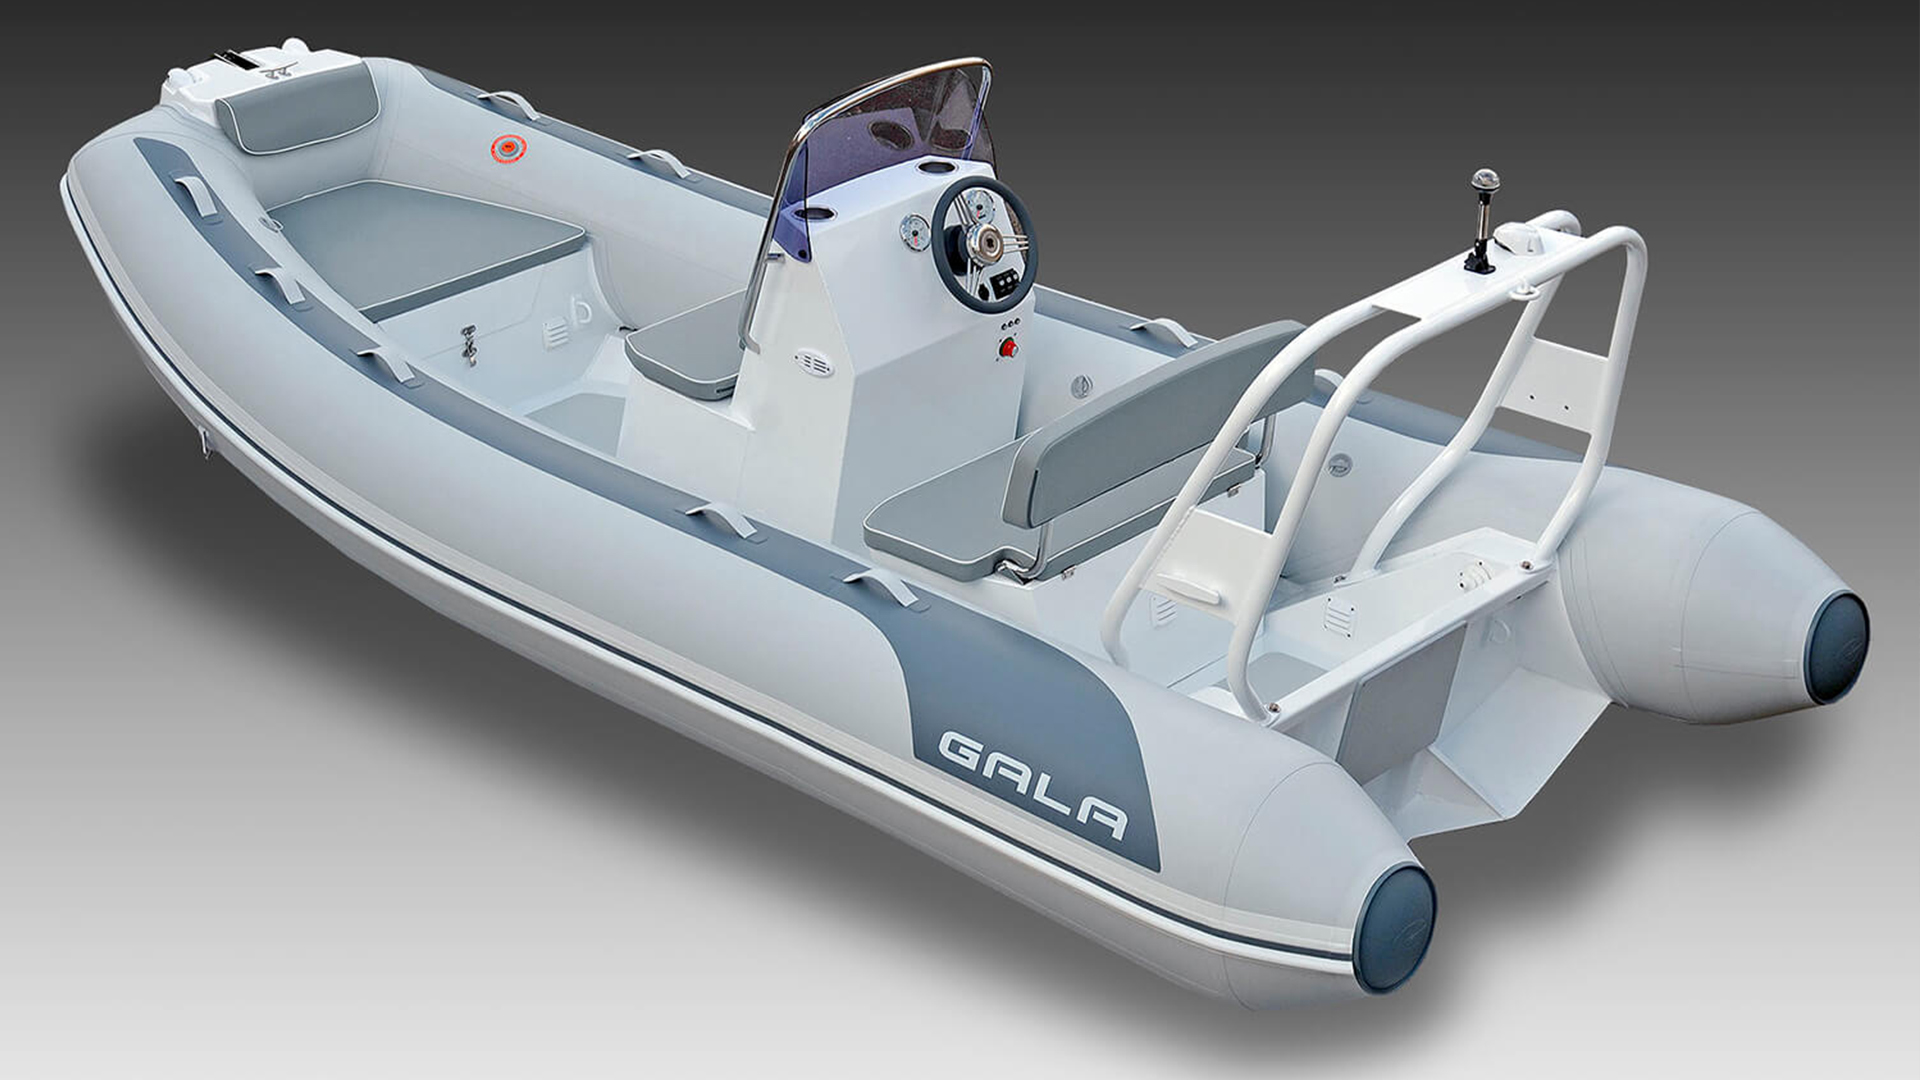 Надувная лодка с жестким алюминиевым дном GALA Atlantis A450L, Надувная лодка с жестким дном GALA Atlantis A450L, Надувная лодка с жестким дном GALA A450L, Надувная лодка GALA A450L, Надувная лодка GALA A450L, GALA A450L, лодка с жестким дном, алюминиевый риб, алюминиевый RIB, RIB, тендерная лодка, тендер для яхты